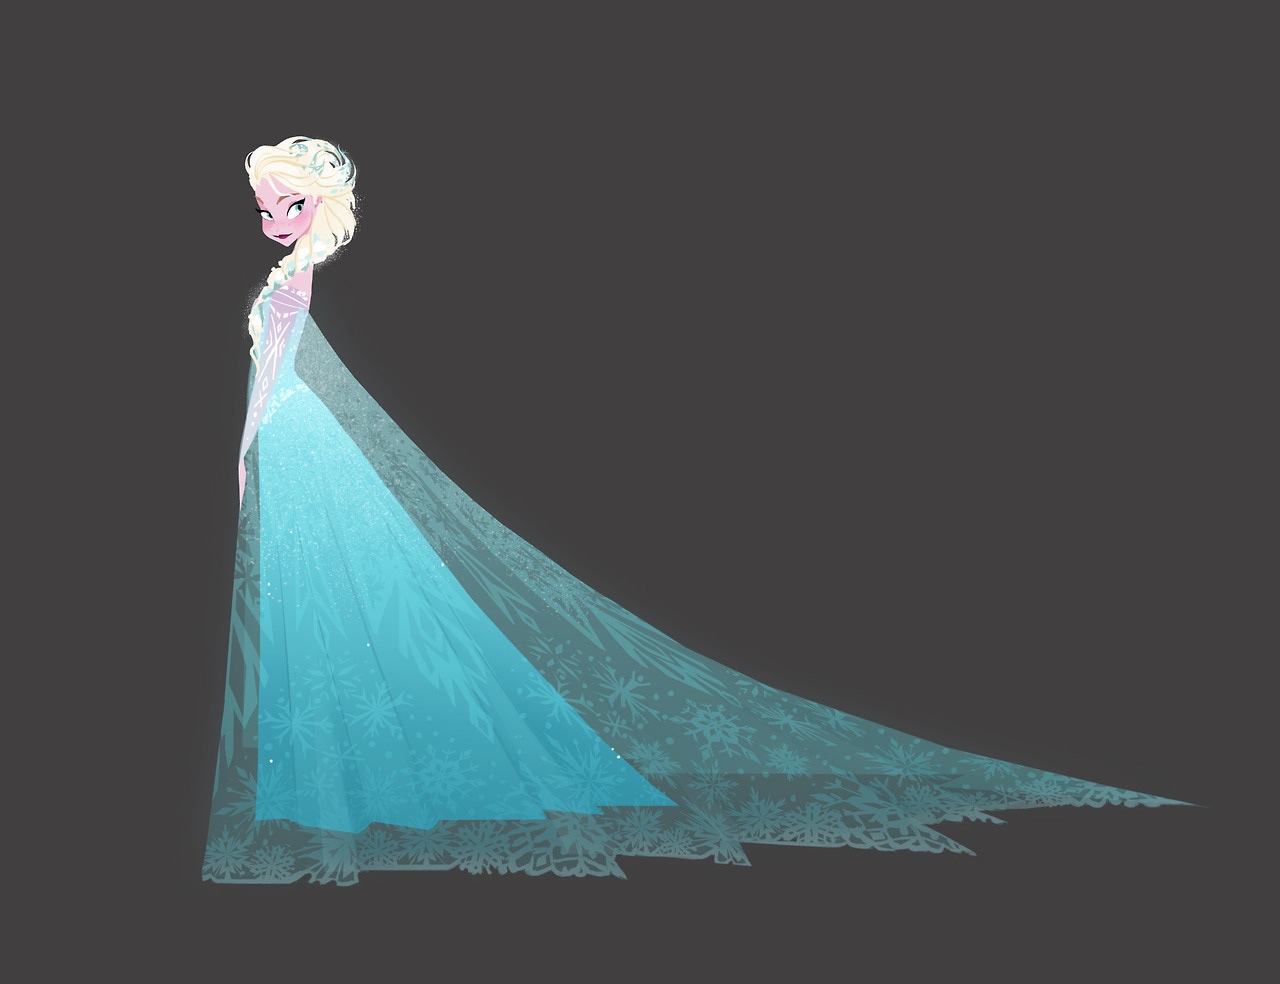 El arte conceptual de Frozen